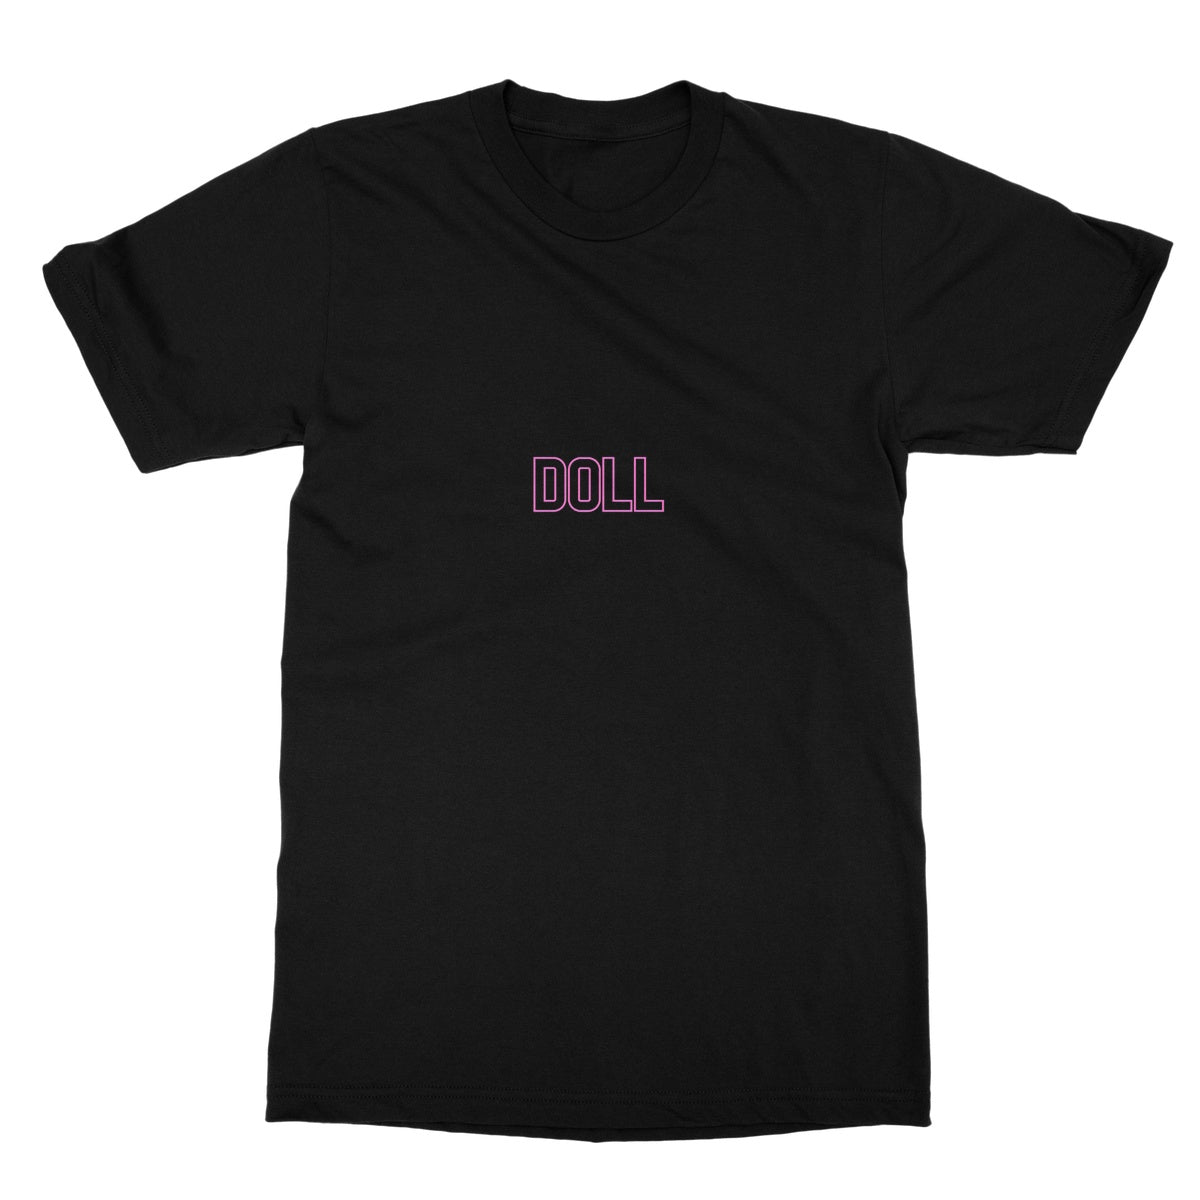 Doll T-Shirt